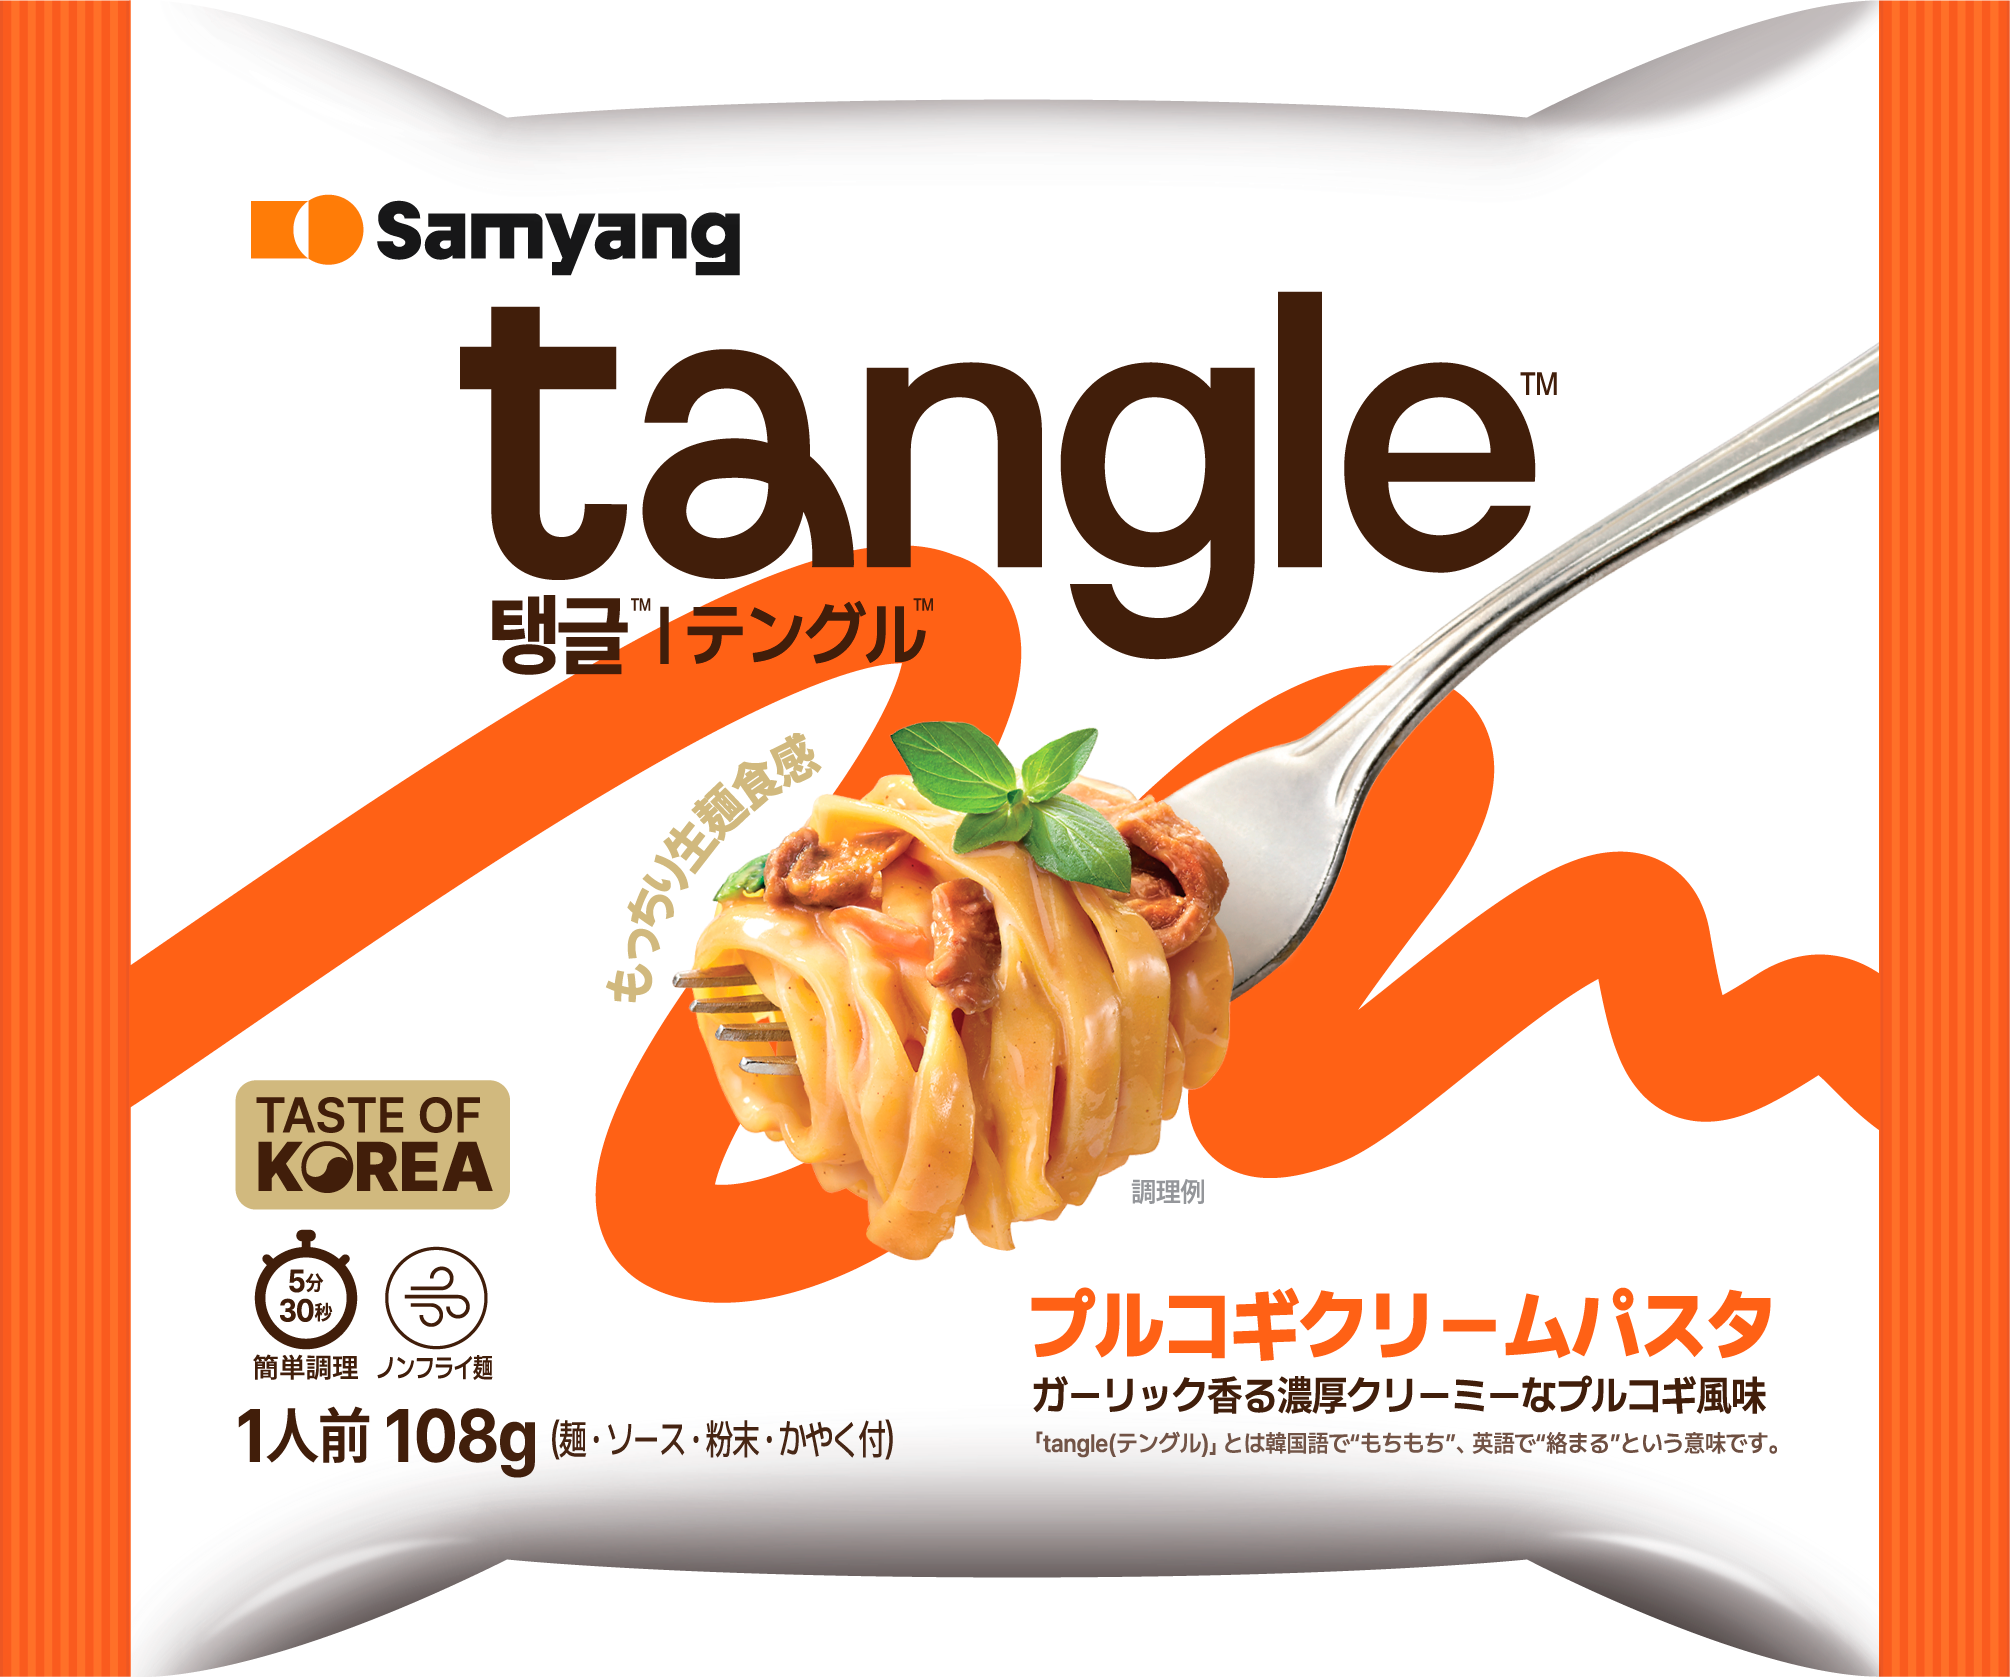 韓国発の次世代パスタ！
沼る食感K-パスタ「tangle（テングル）」登場！
韓国の定番料理「プルコギ」味と
流行のロゼ味を意識した「キムチロゼ」味の2種類！